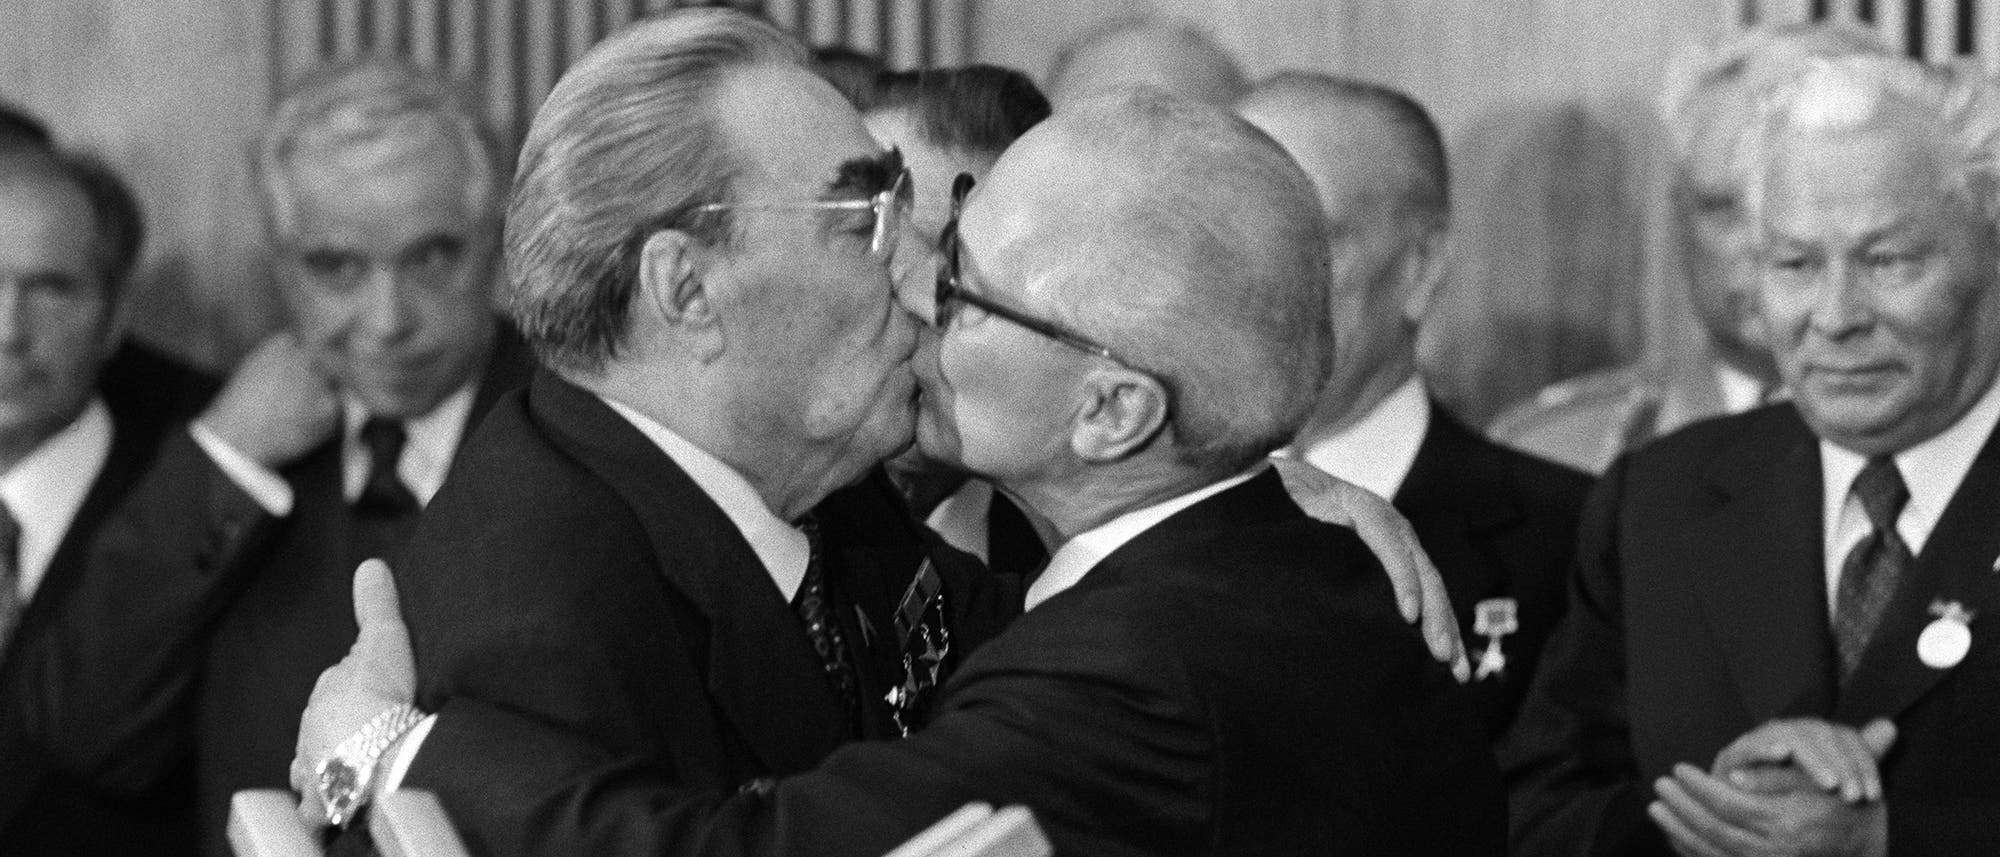 Bruderkuss zwischen Erich Honecker und Leonid Breschnew 1979.